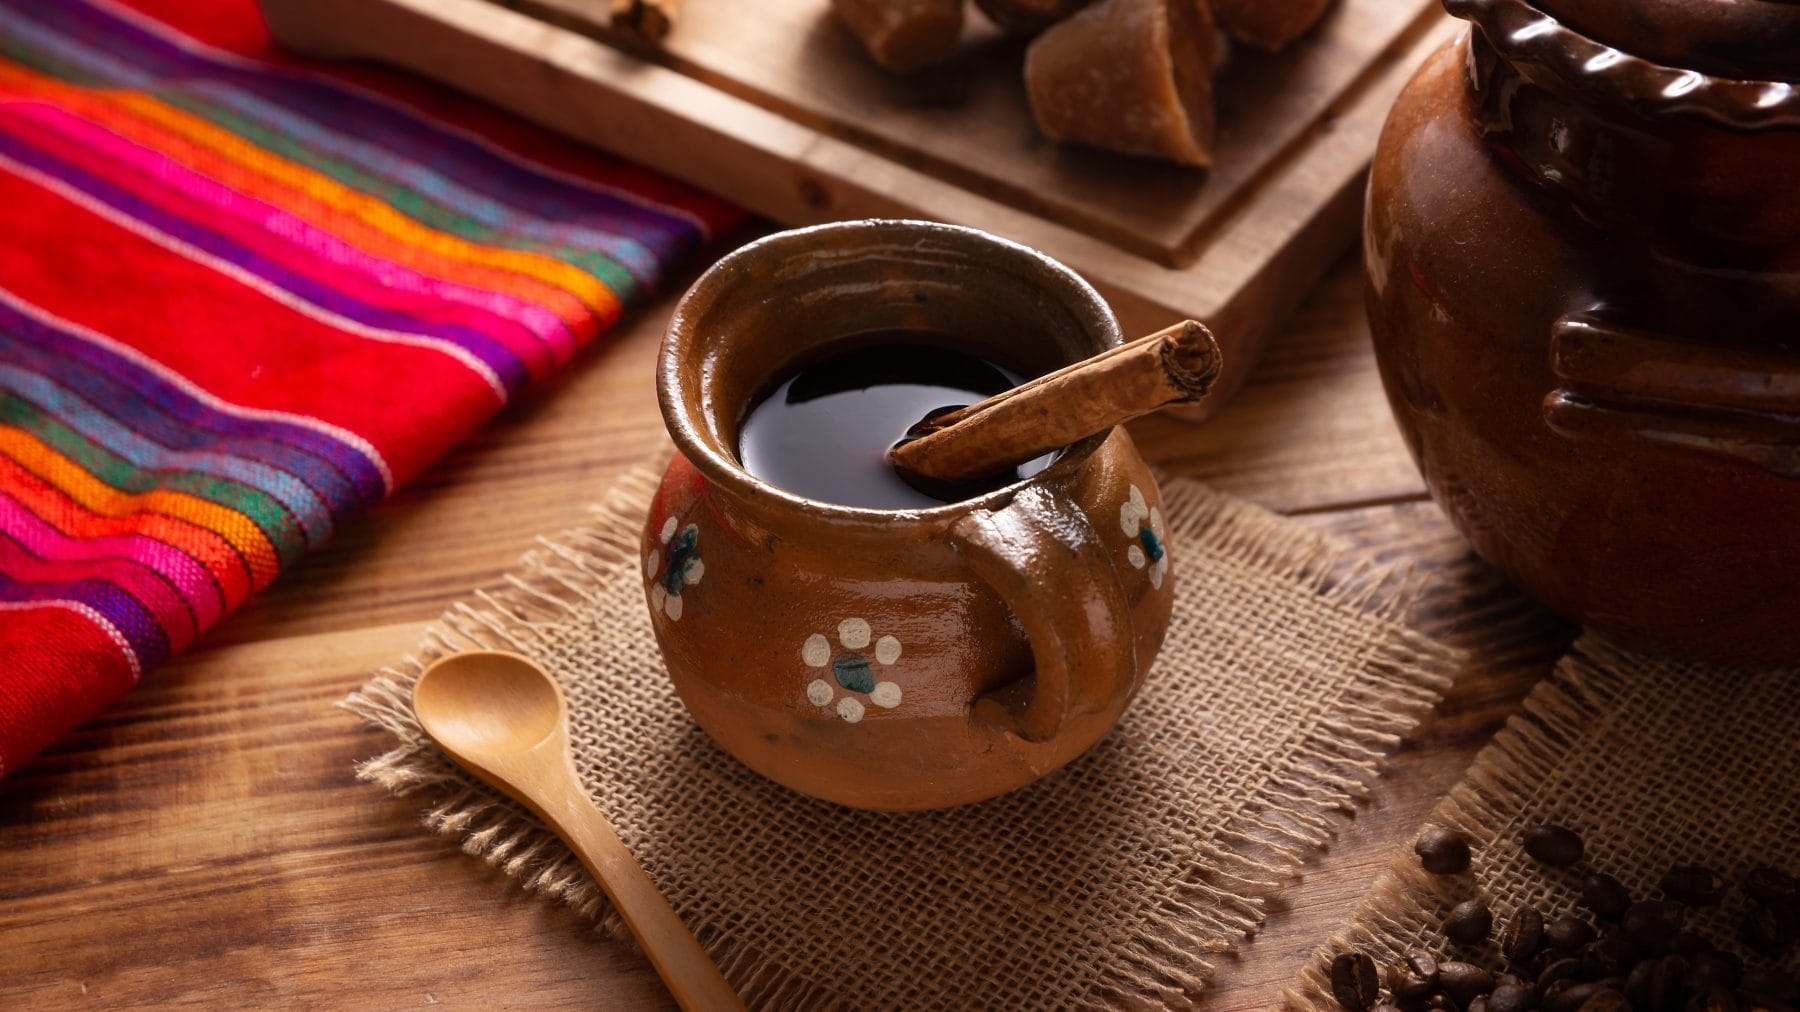 Café de Olla traditioneller mexikanischer Kaffe in Tongefäß mit Zimtstange auf Stofftuch. Daneben traditionelles mexikanisches Tischtuch, brauner Zucker, eine Tonkanne und Zimtstangen. Draufsicht.